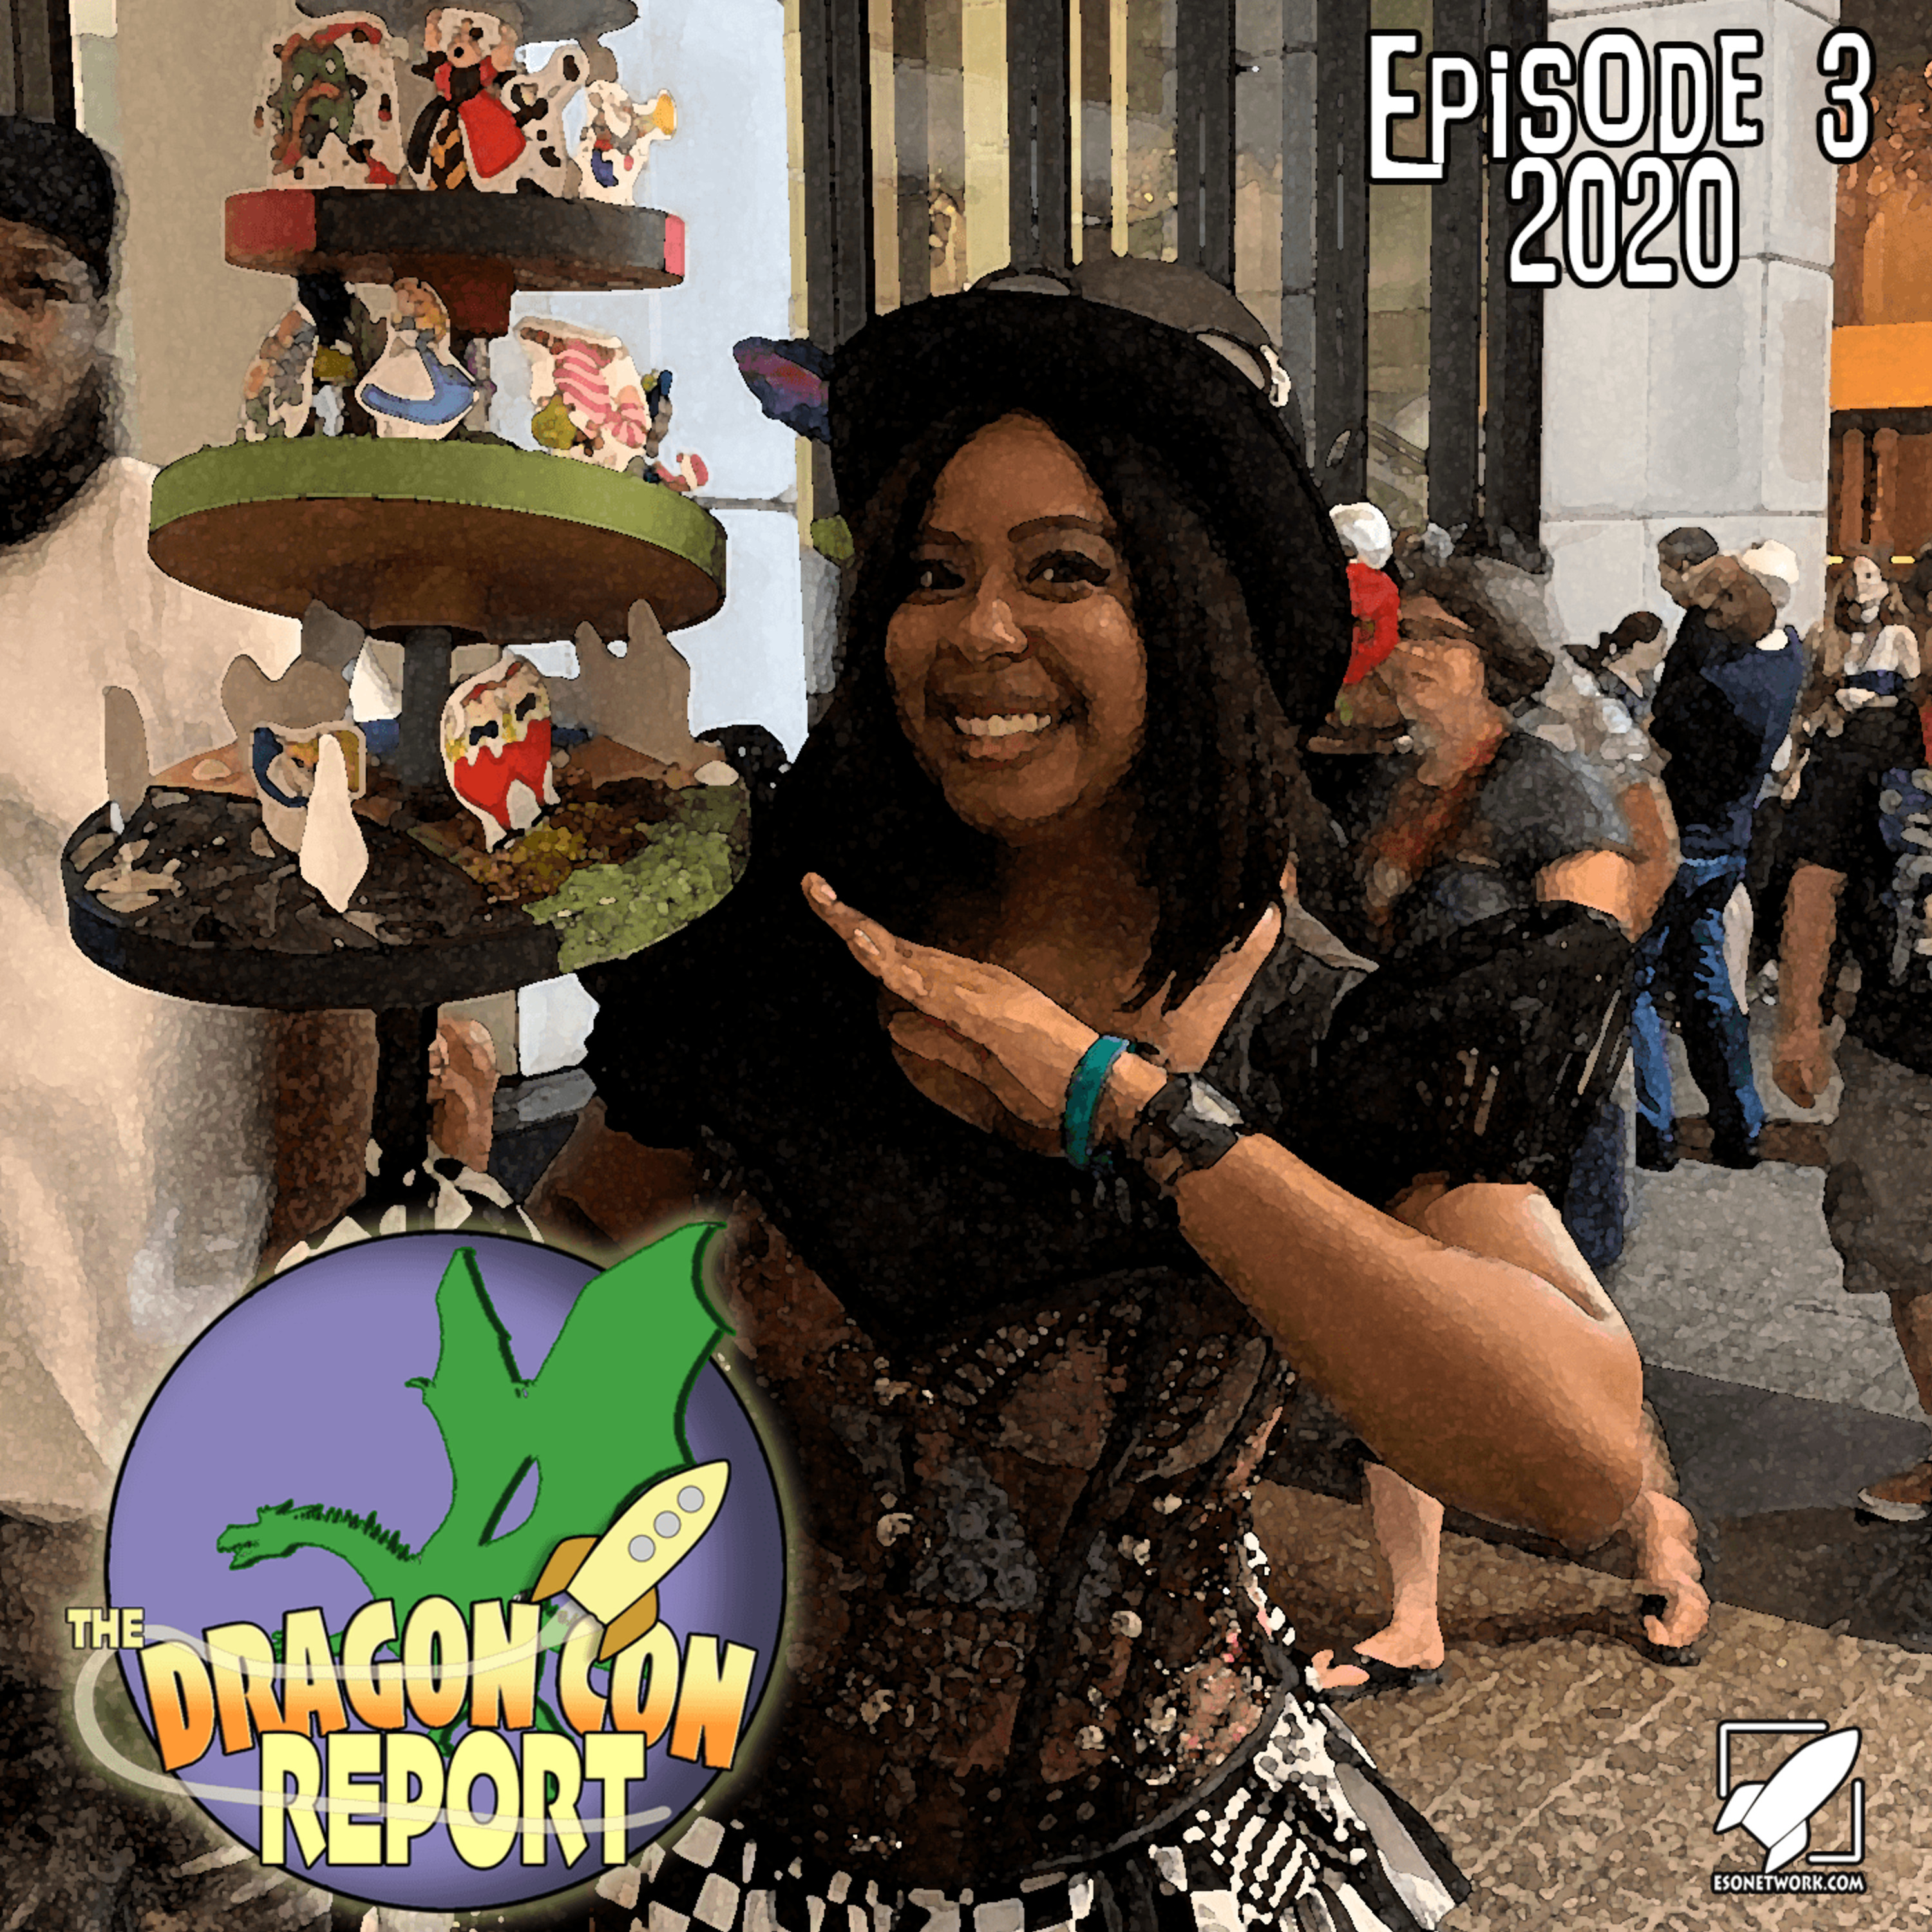 The 2020 Dragon Con Report Episode 3